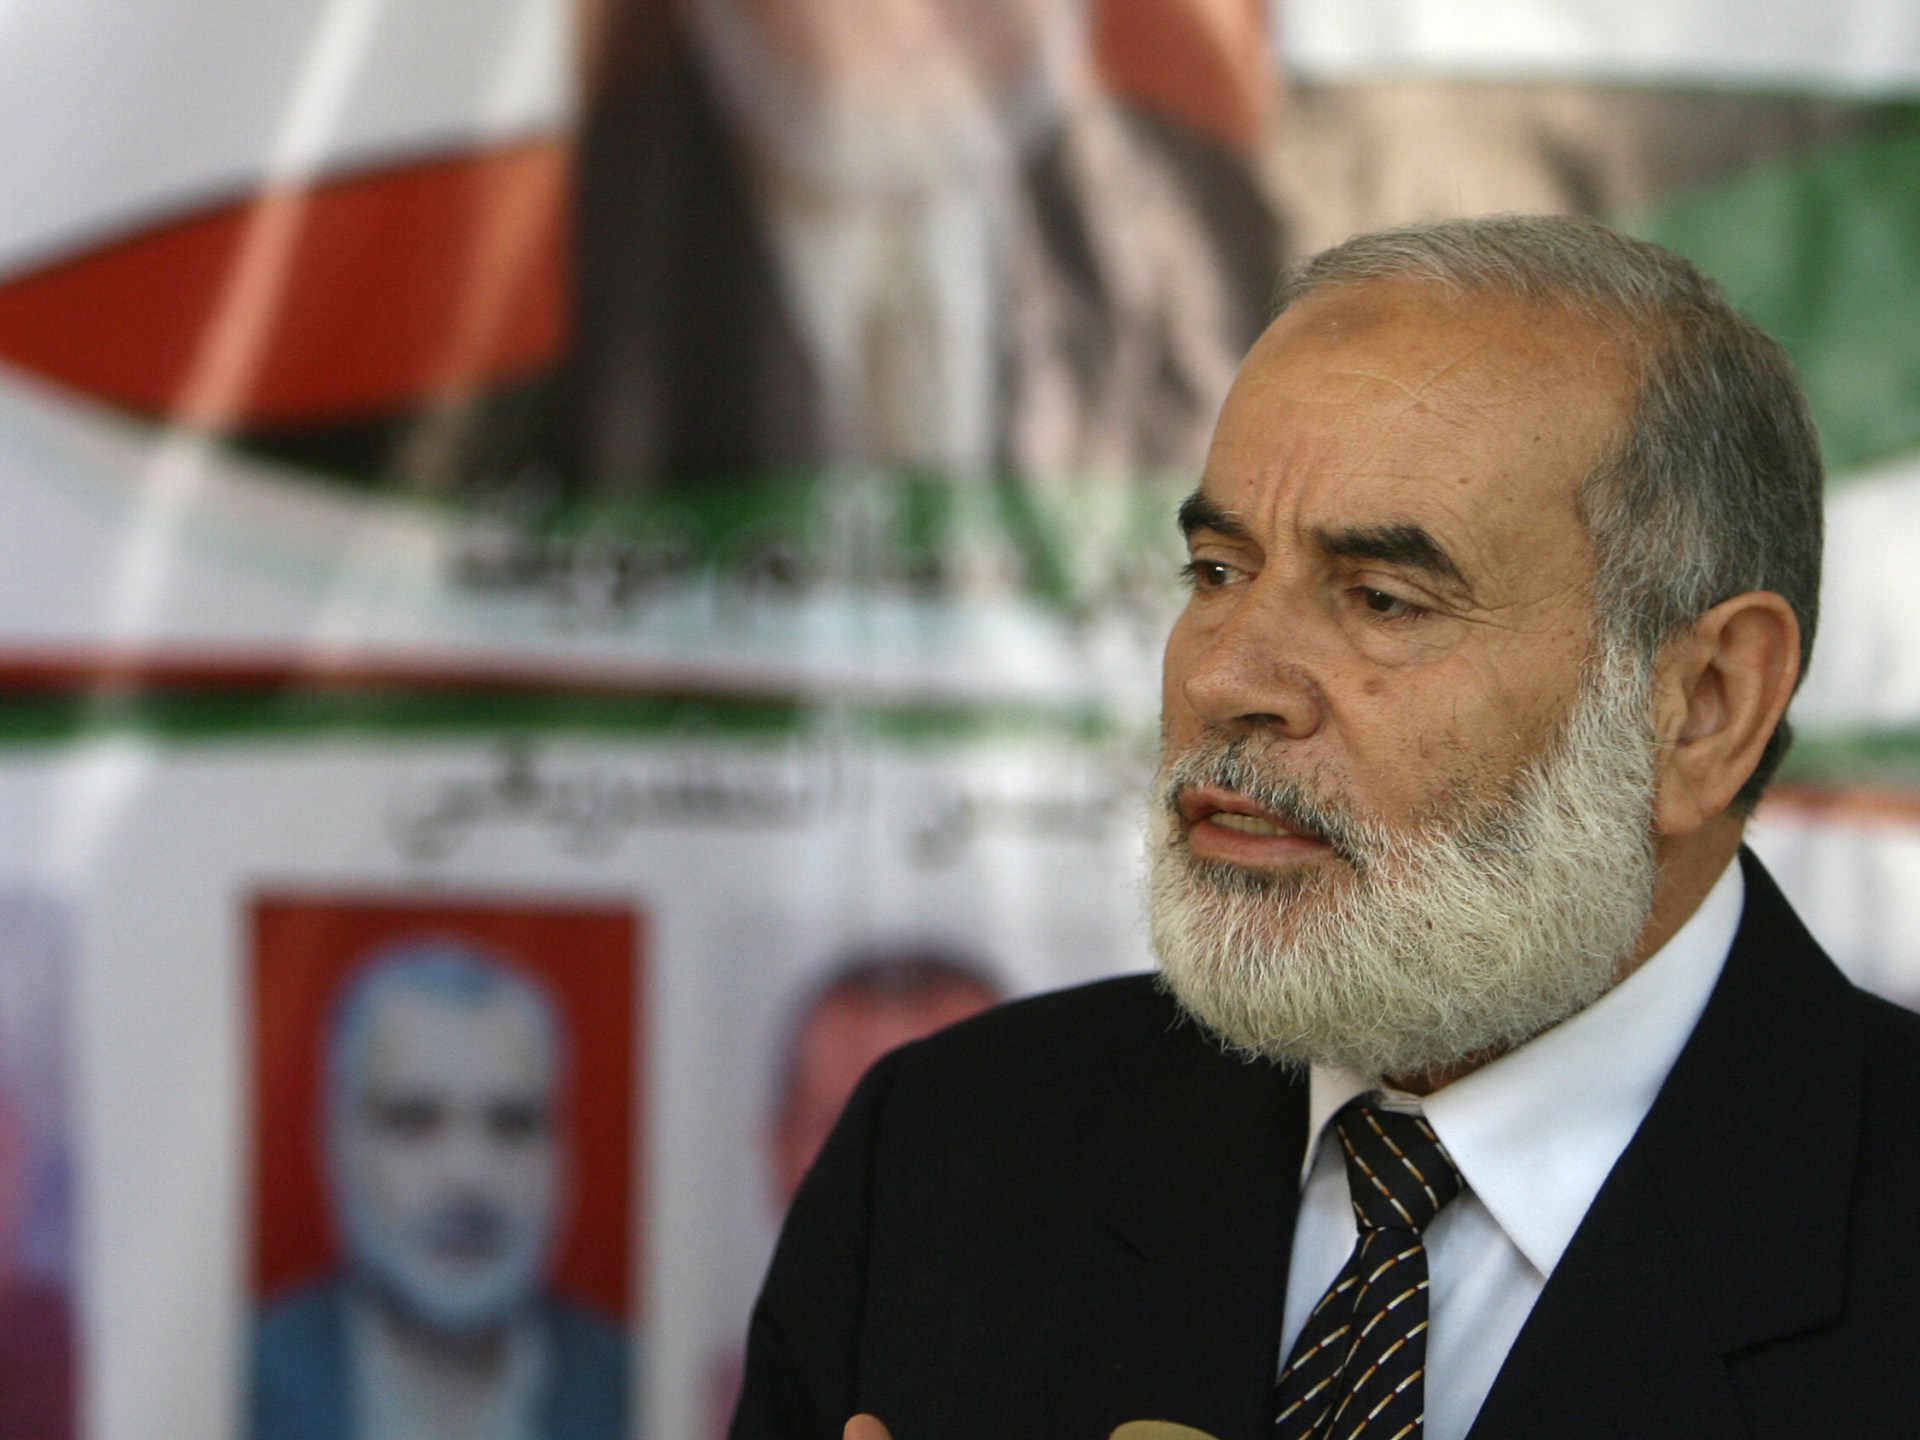 حماس تعلن استشهاد رئيس “التشريعي الفلسطيني” بالإنابة أحمد بحر | أخبار – البوكس نيوز